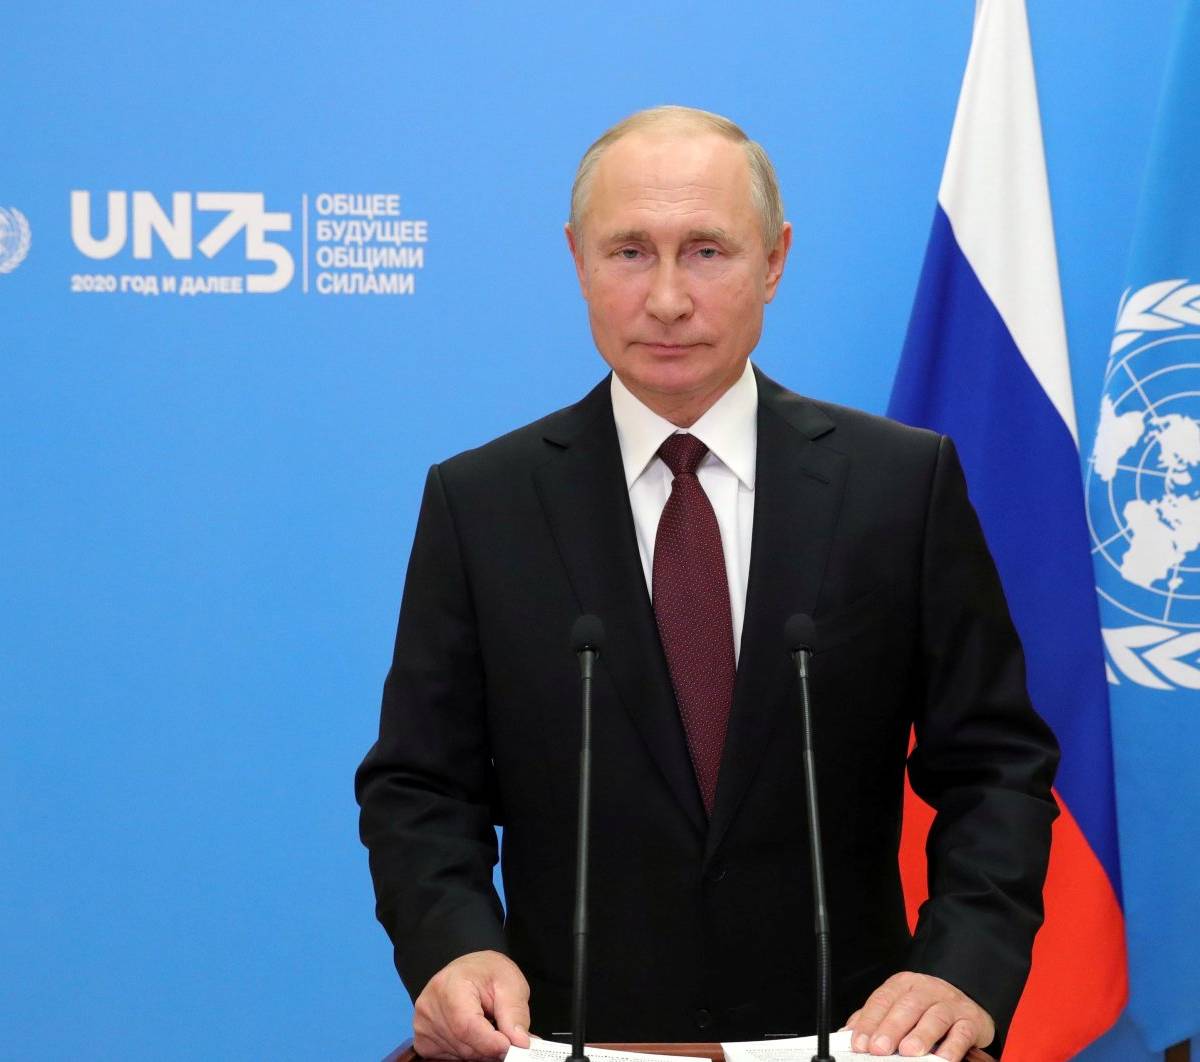 Куда идет мир: сравнение речей Путина, Си и Трампа на 75-й сессии ГА ООН